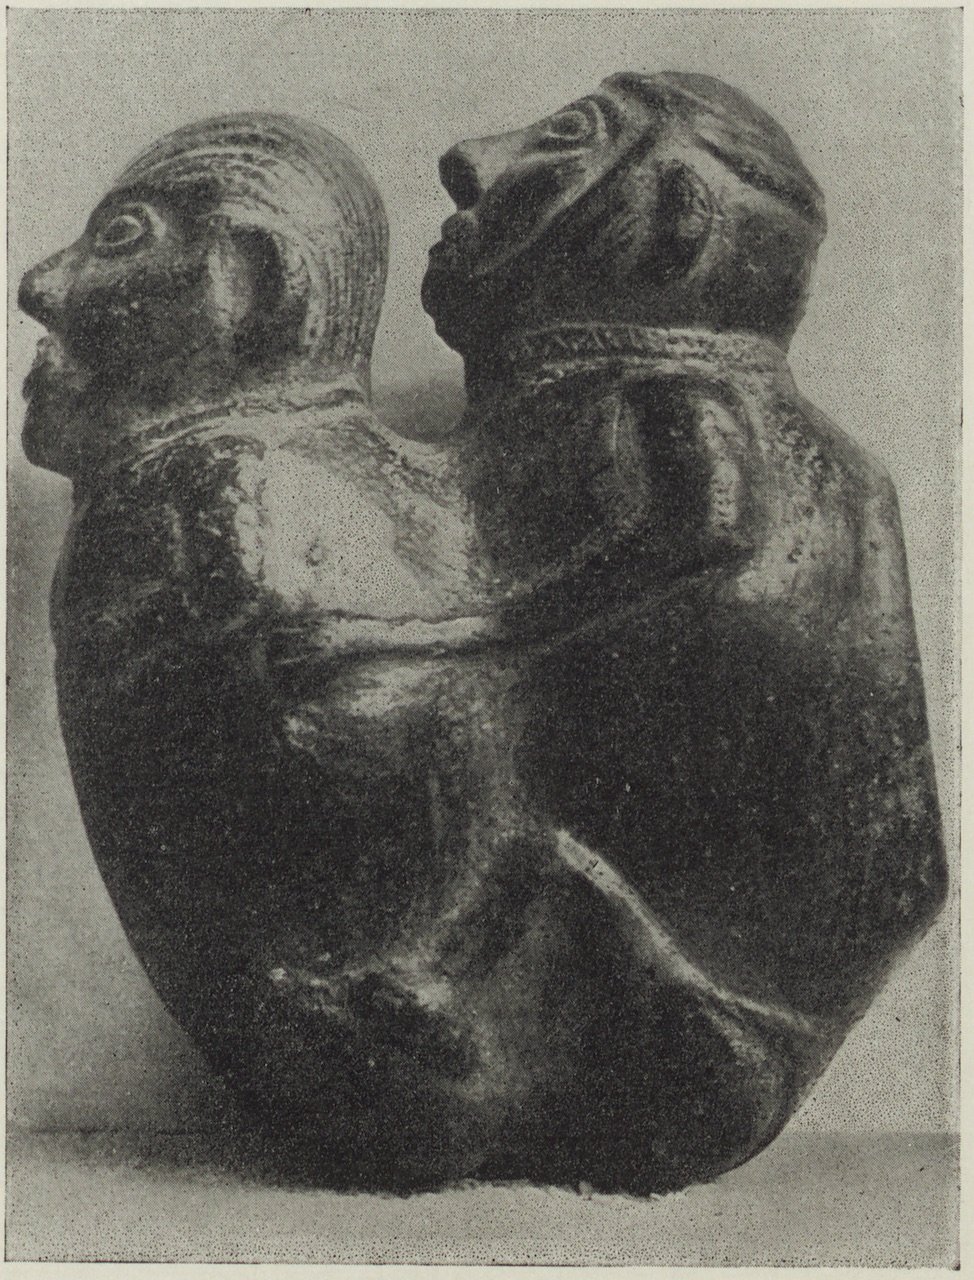 Fotografie einer antiken peruanischen Steinplastik (Magnus-Hirschfeld-Gesellschaft Public Domain Mark)